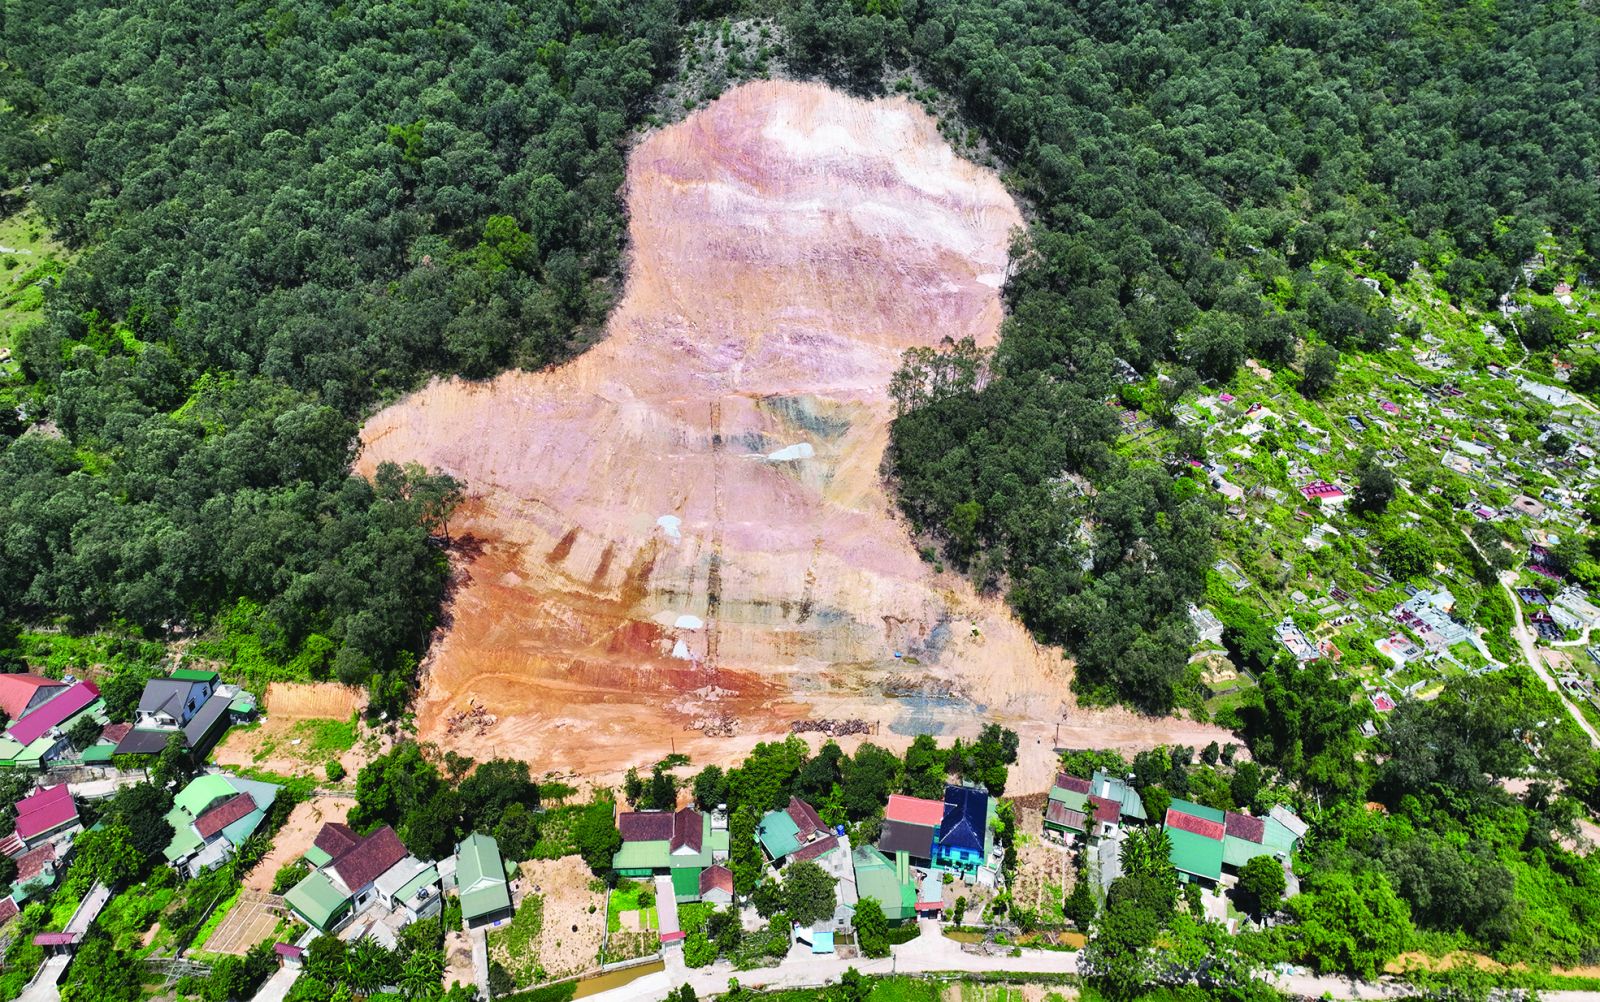  Nhiều hộ dân xã Hưng Thành, huyện Hưng Nguyên, tỉnh Nghệ An kêu cứu do lo sợ sạt lở đất xảy ra tại dự án xử lý sạt lở đồi Thô Lô – núi Thành.